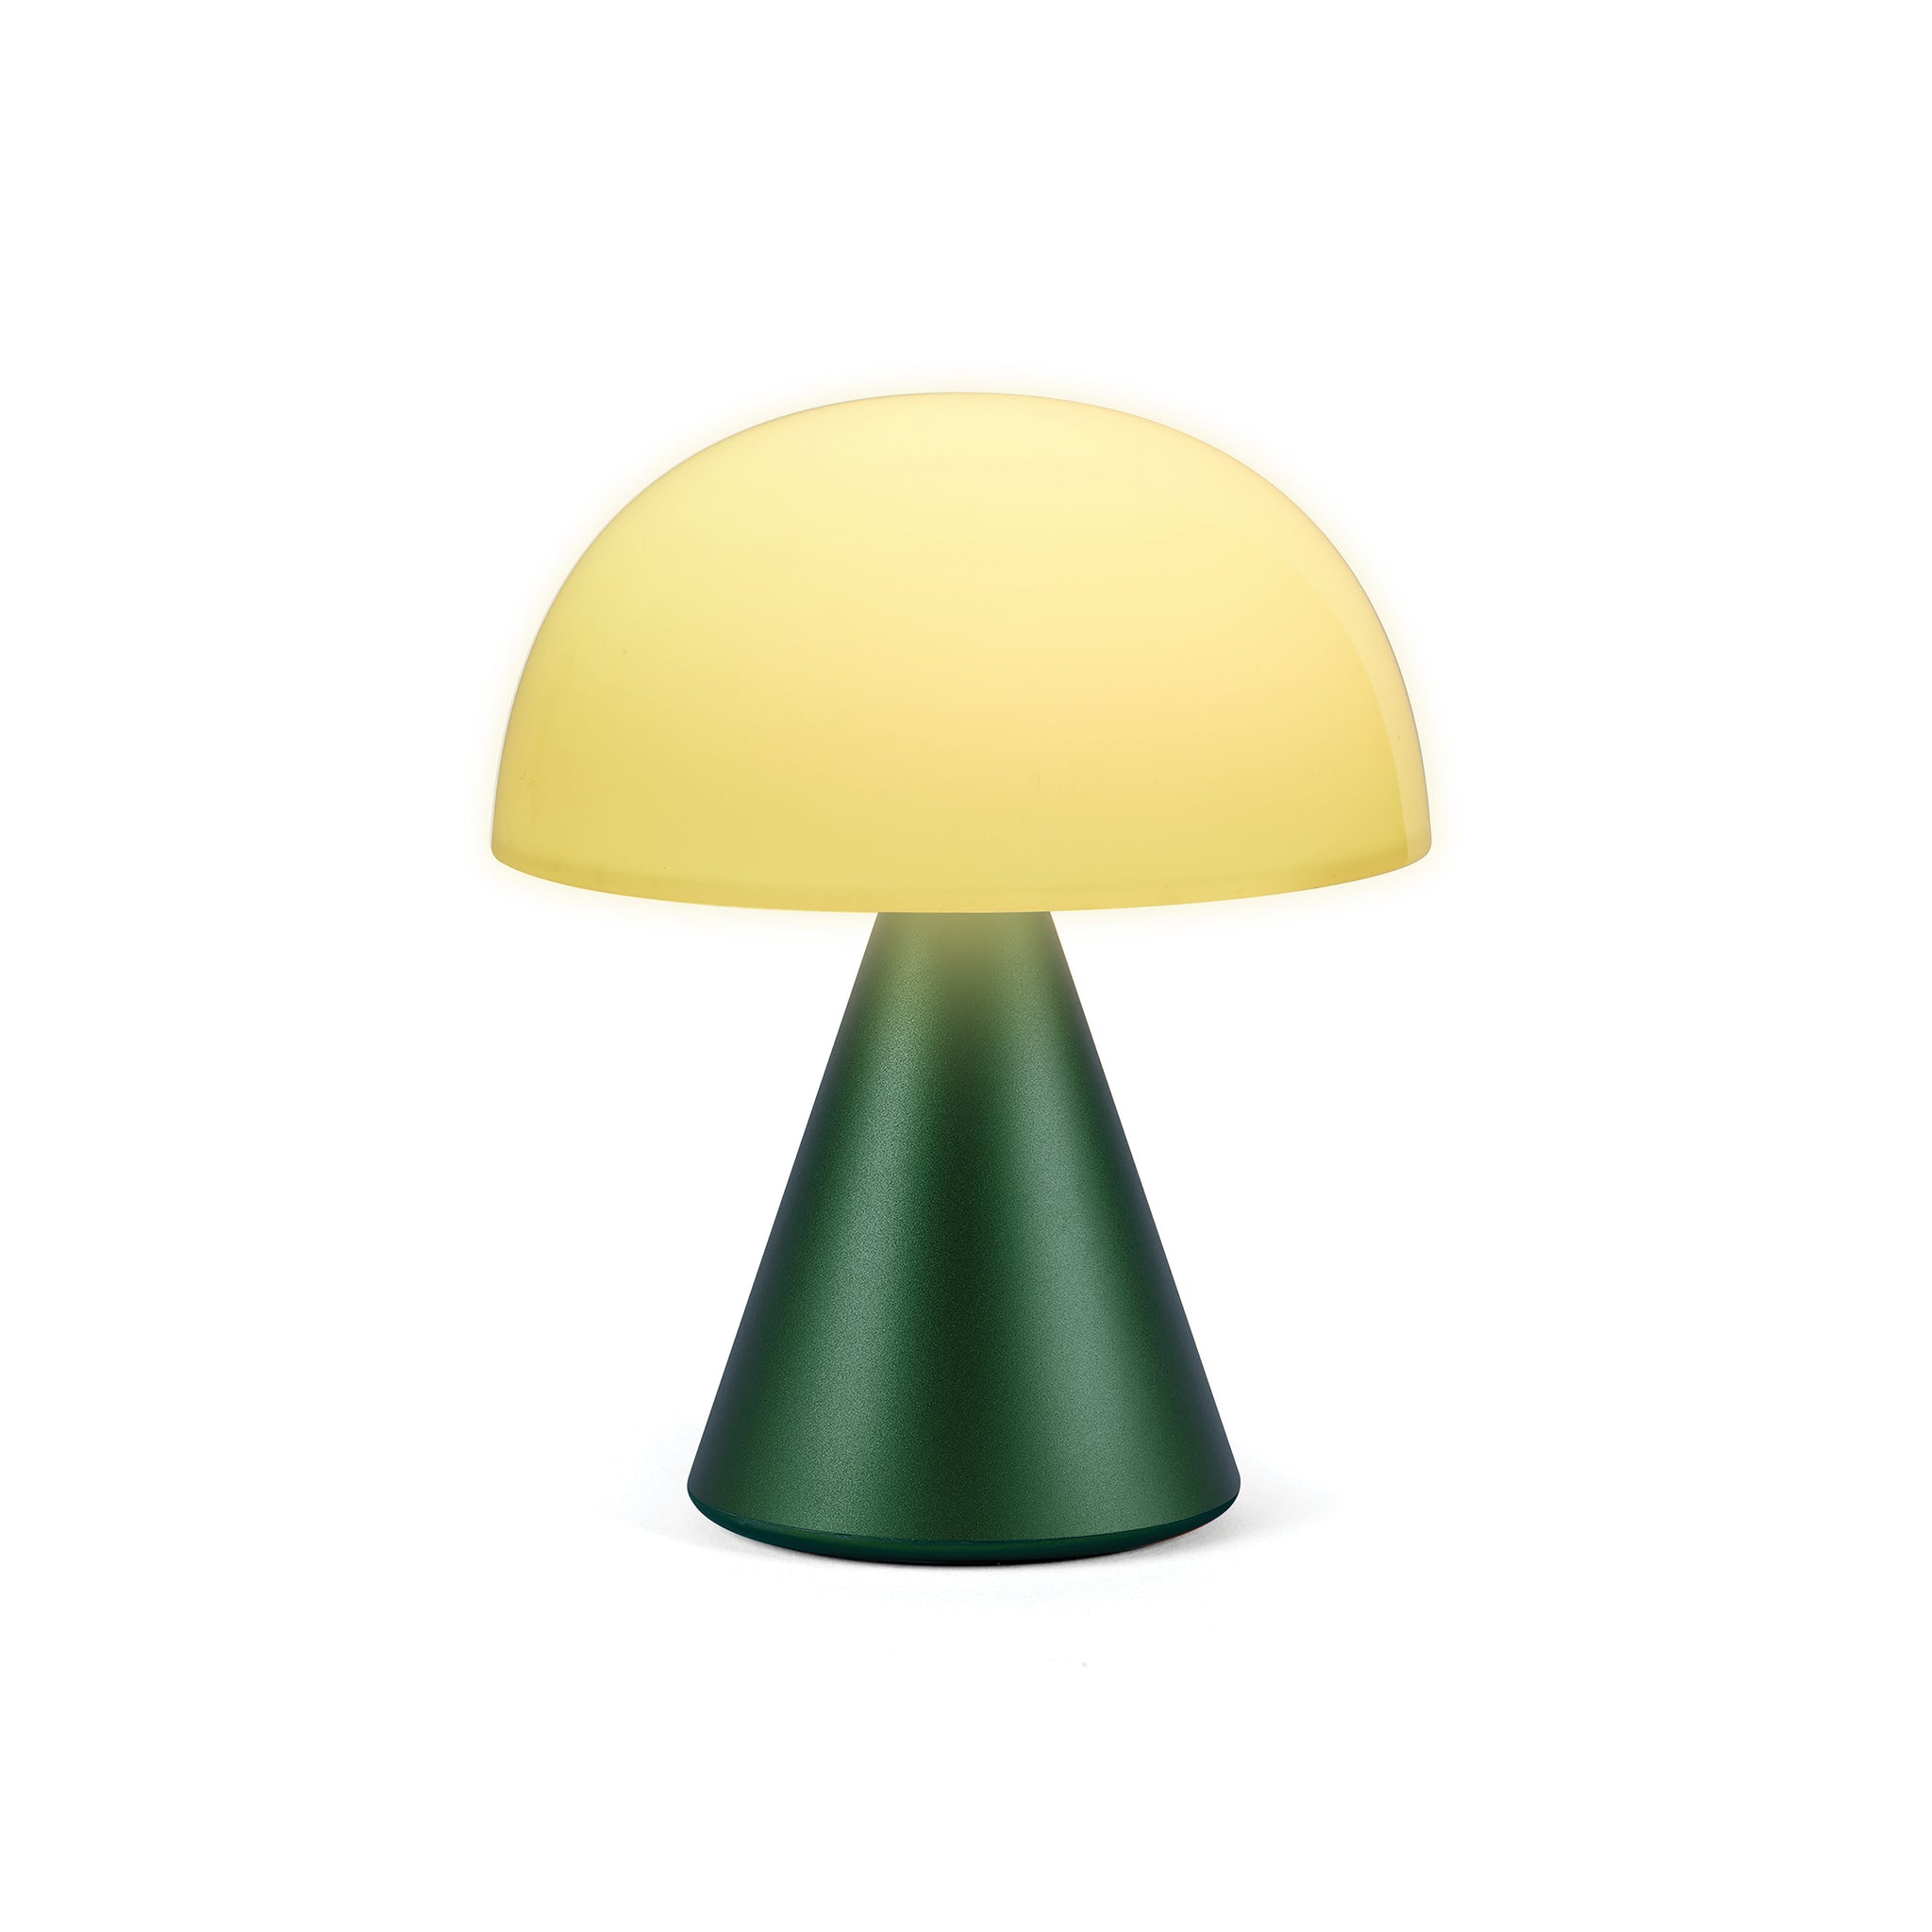 Lexon Mina Medium Donker Groen│Oplaadbare Led-Lamp│art. LH64DG1│vooraanzicht met geel licht aan